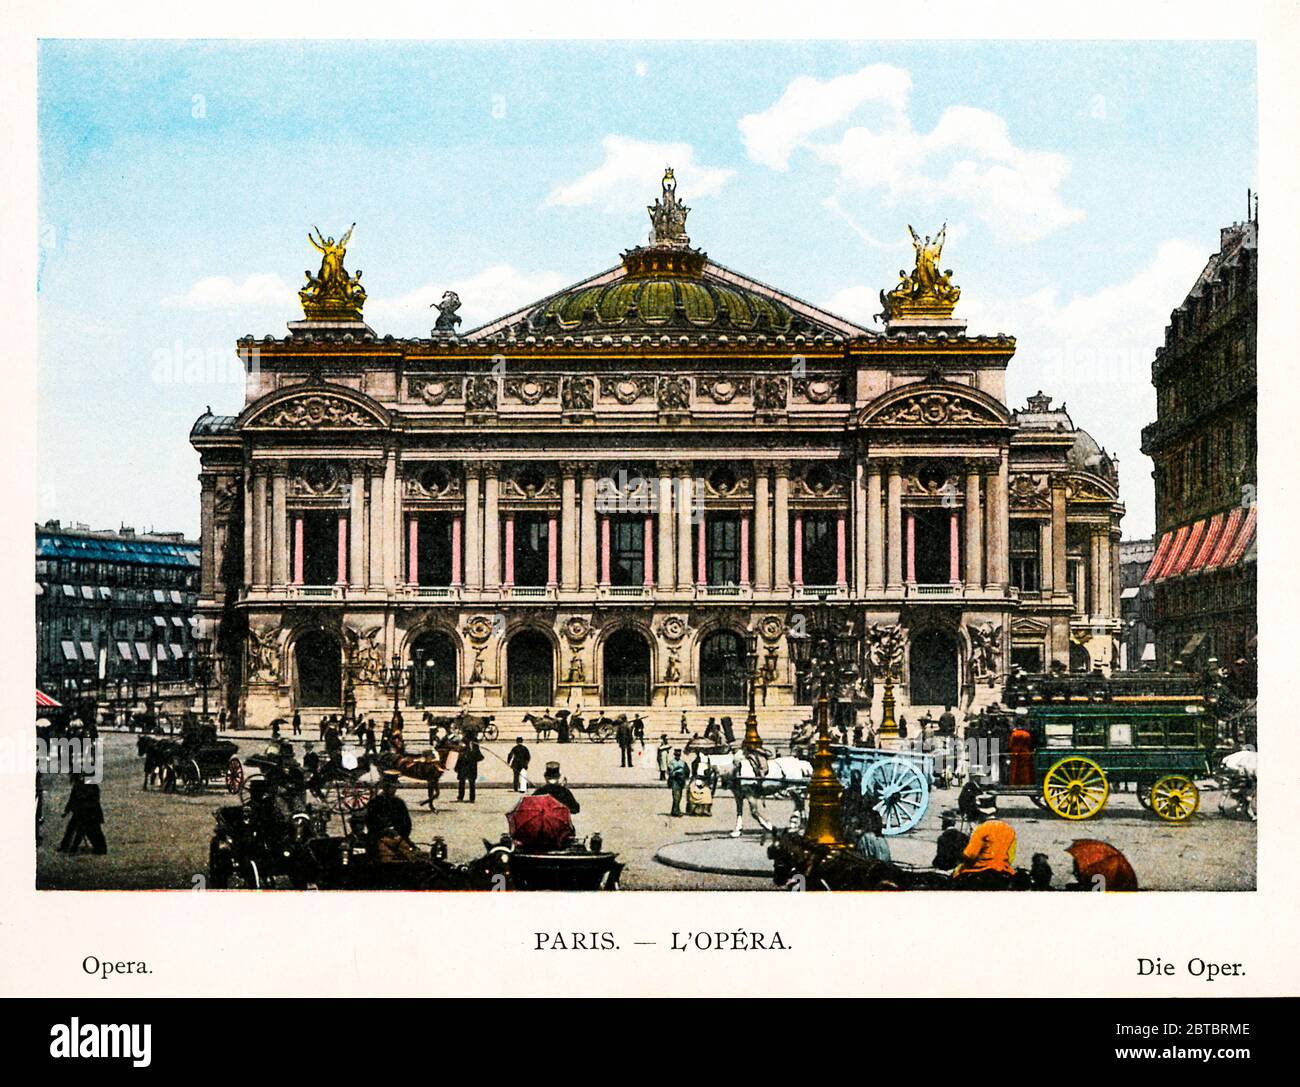 L'Opéra, Paris 1900 Farbfoto des Pariser Opernhauses, des Palais Garnier, erbaut von Napoleon III. Und 1875 fertiggestellt Stockfoto